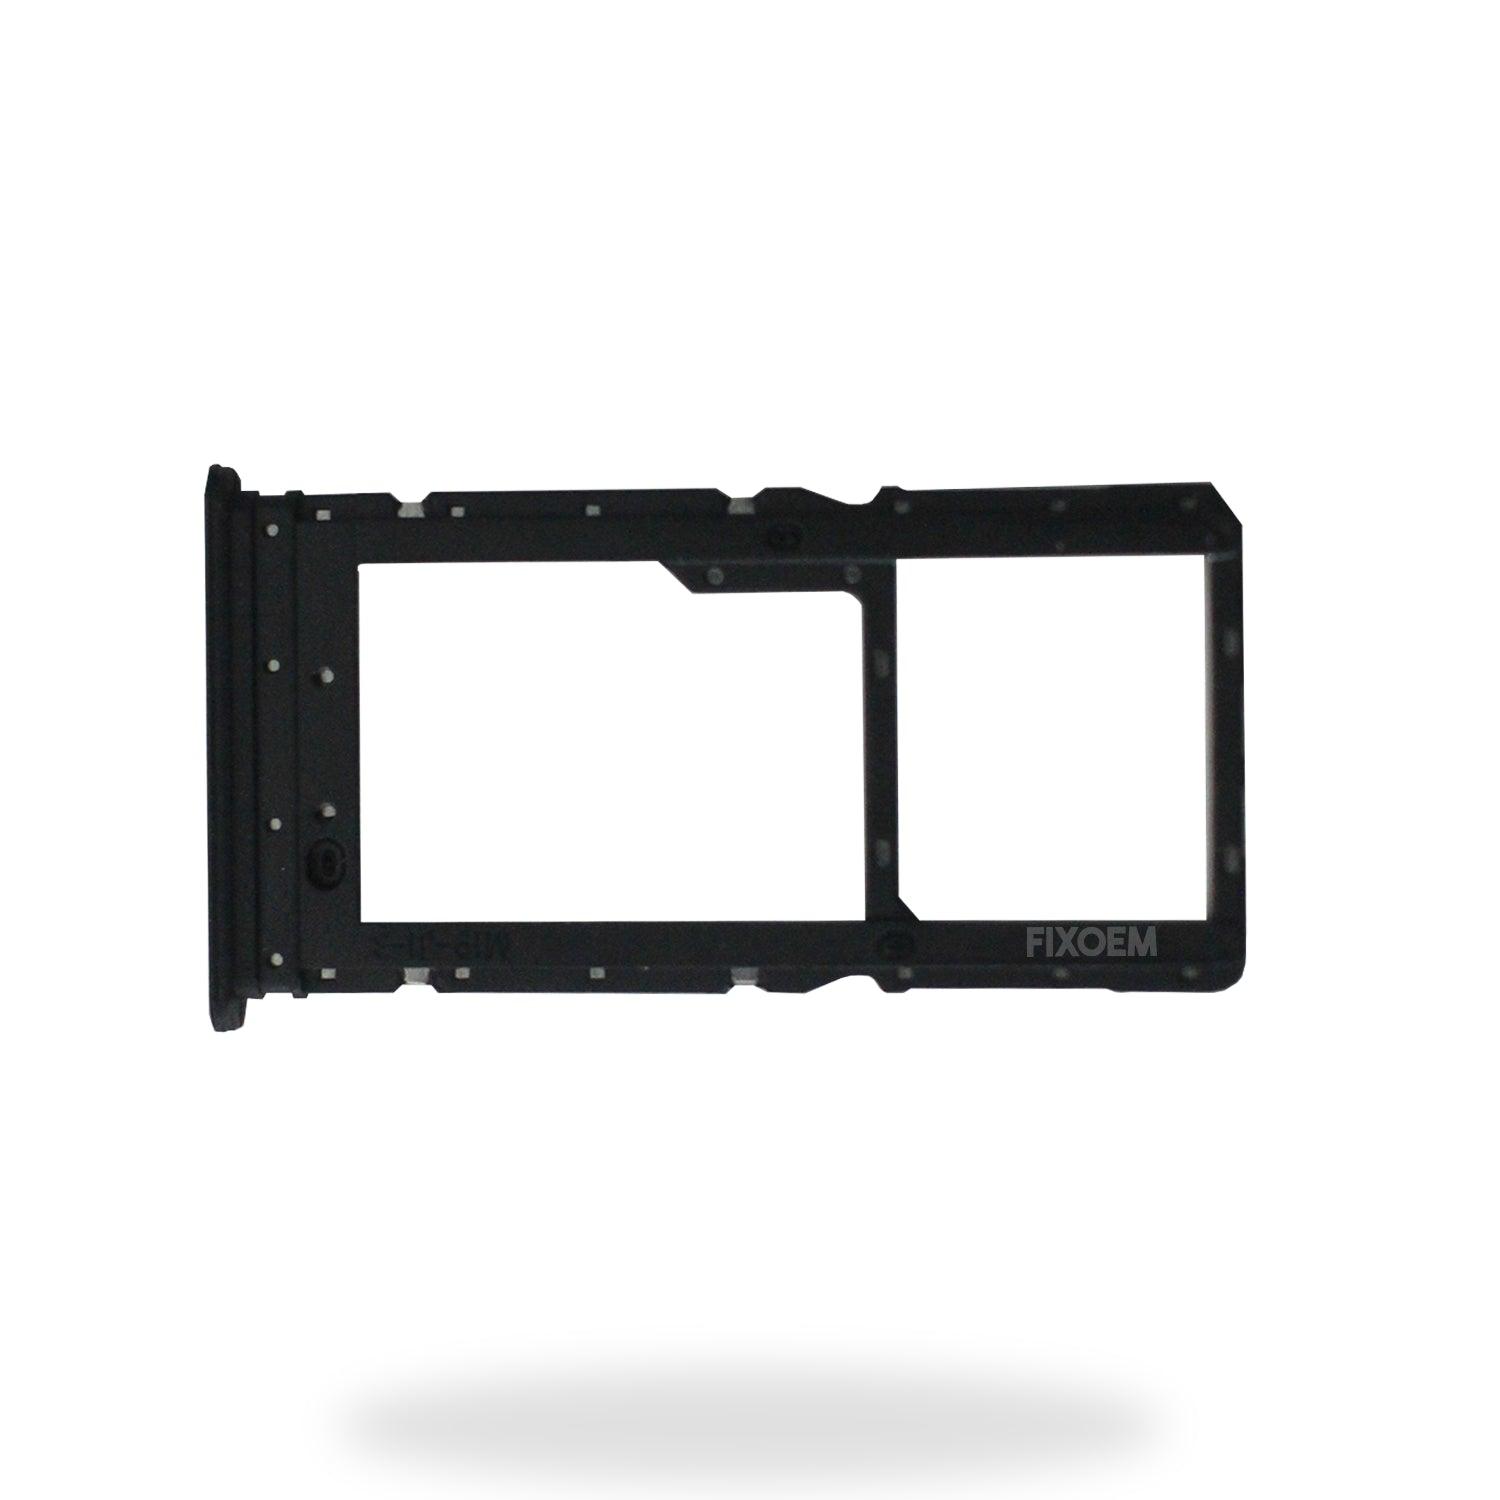 Charola Sim Xiaomi Redmi 12 a solo $ 30.00 Refaccion y puestos celulares, refurbish y microelectronica.- FixOEM